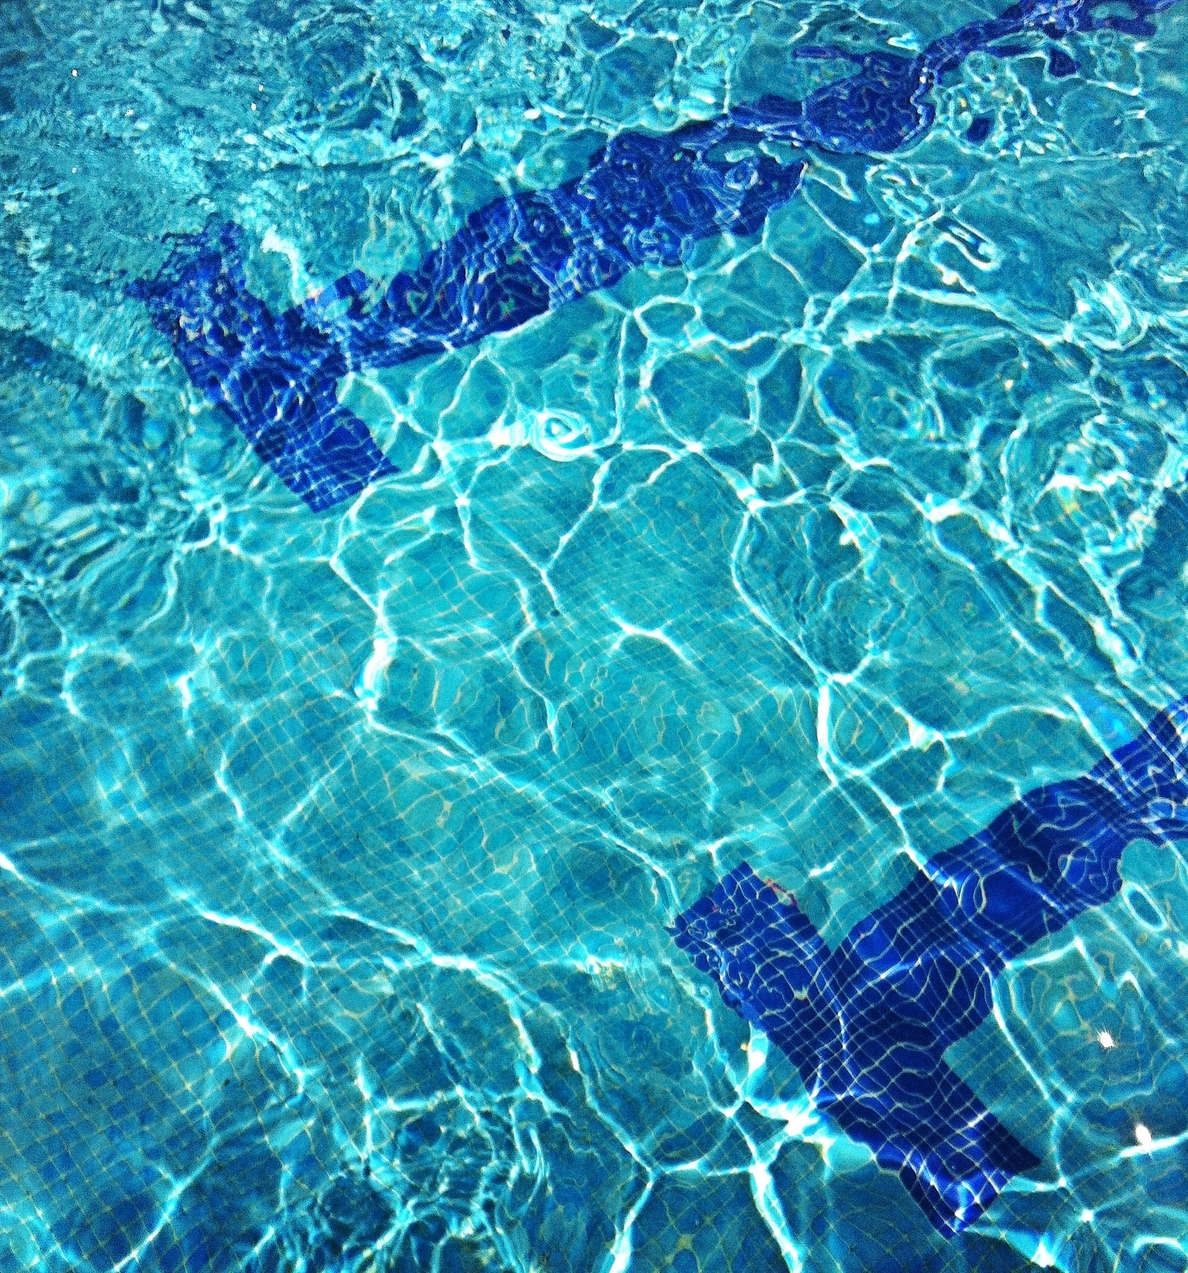 Sanidad recomienda usar chalecos salvavidas en lugar de flotadores en caso de no saber nadar